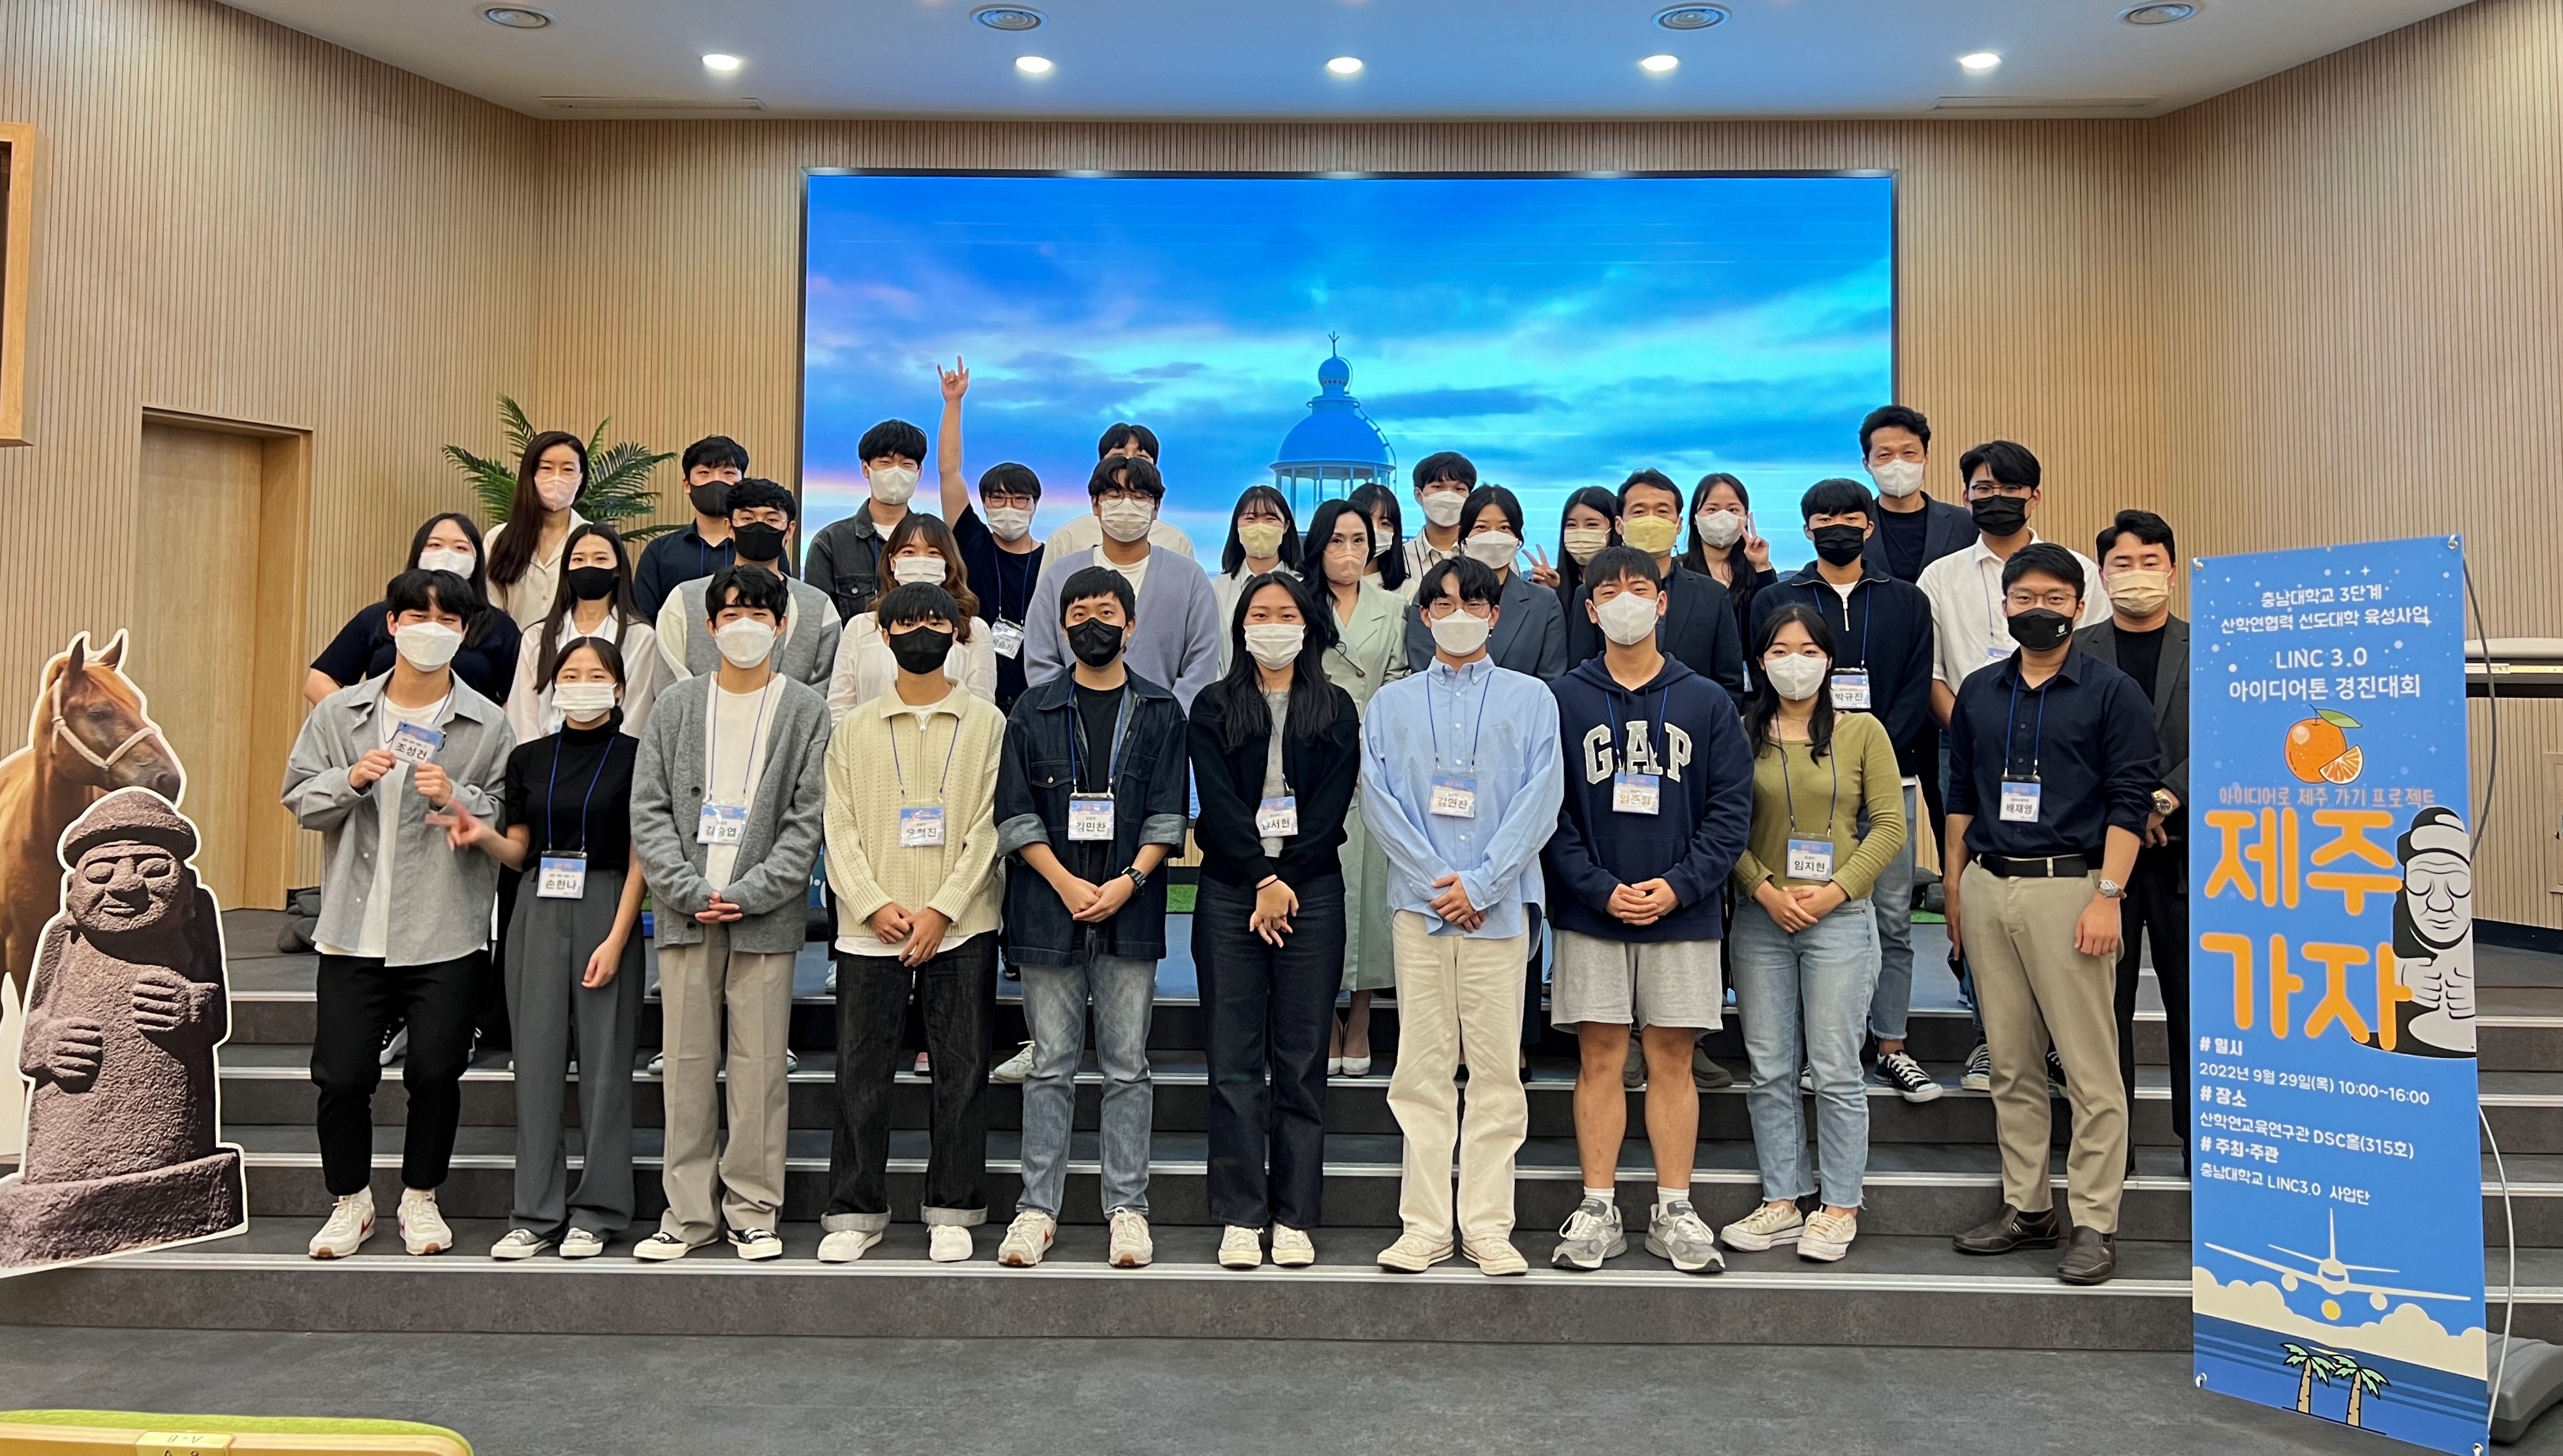 ‘제주가자, LINC3.0 아이디어톤 경진대회’ 개최 사진